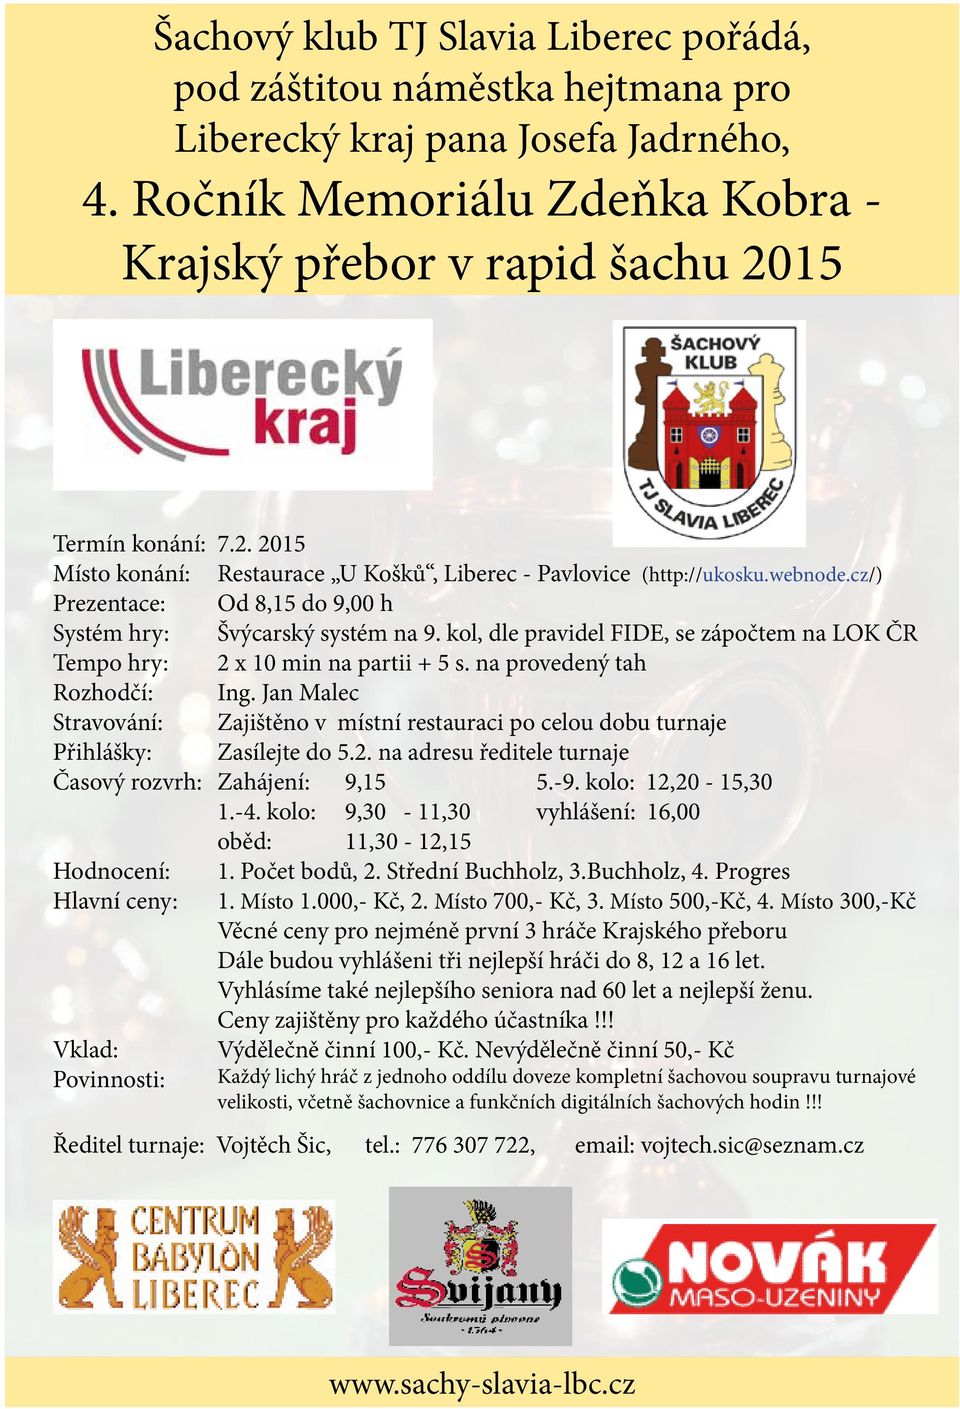 ceny: Vklad: Povinnosti: 7.2. 2015 Restaurace U Košků, Liberec - Pavlovice (http://ukosku.webnode.cz/) Od 8,15 do 9,00 h Švýcarský systém na 9.